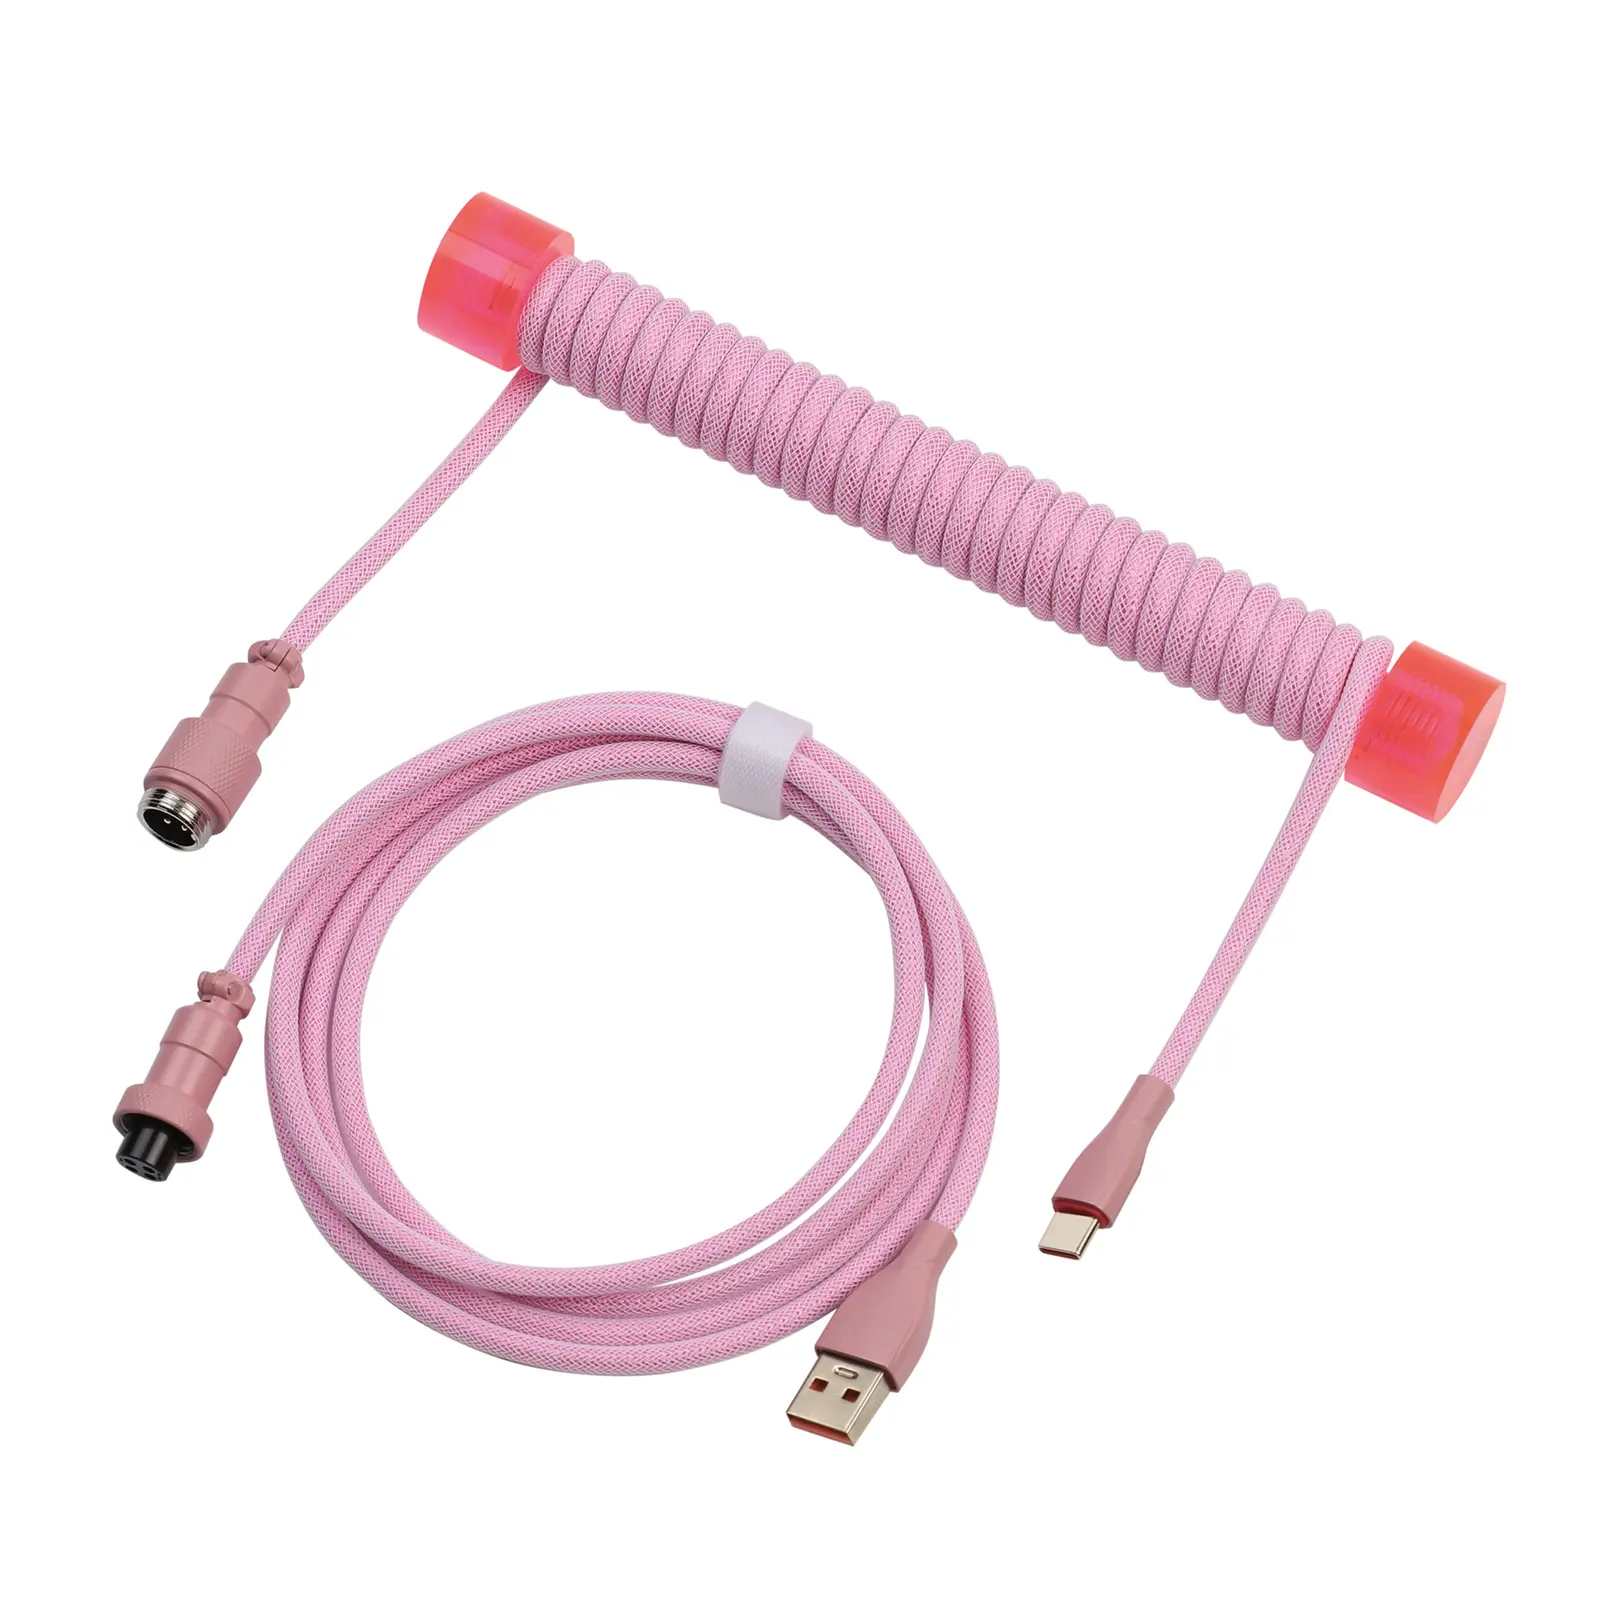 Grosir EPOMAKER MIX SE kabel kumparan USB-C 1.5m lengan ganda kabel kumparan keyboard mekanik kabel